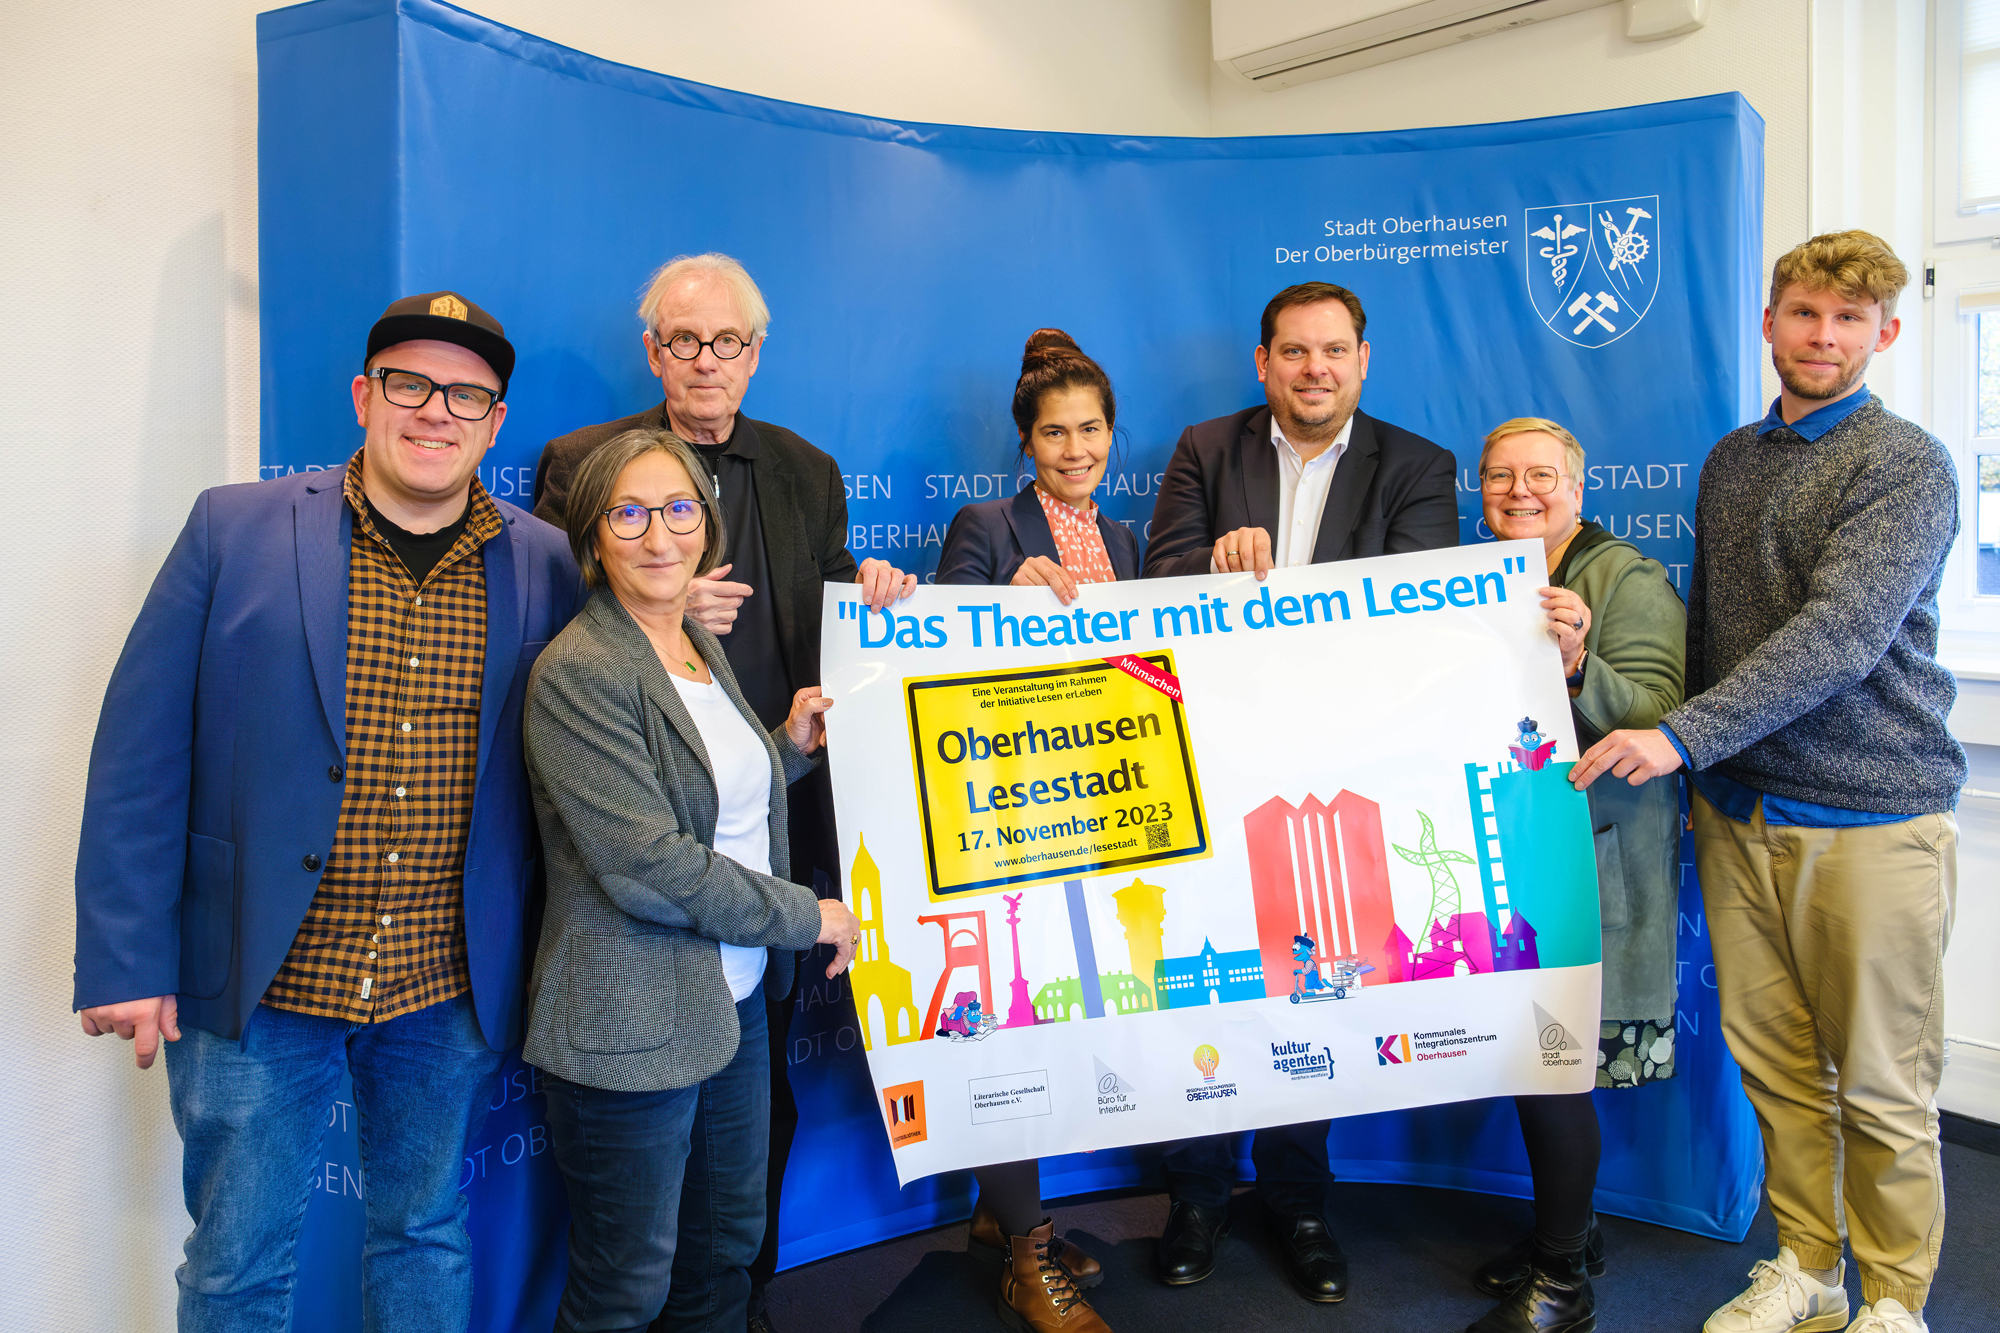 Lesestadt Oberhausen 2023: Die zahlreichen Veranstaltungen stehen unter dem Motto Das Theater mit dem Lesen